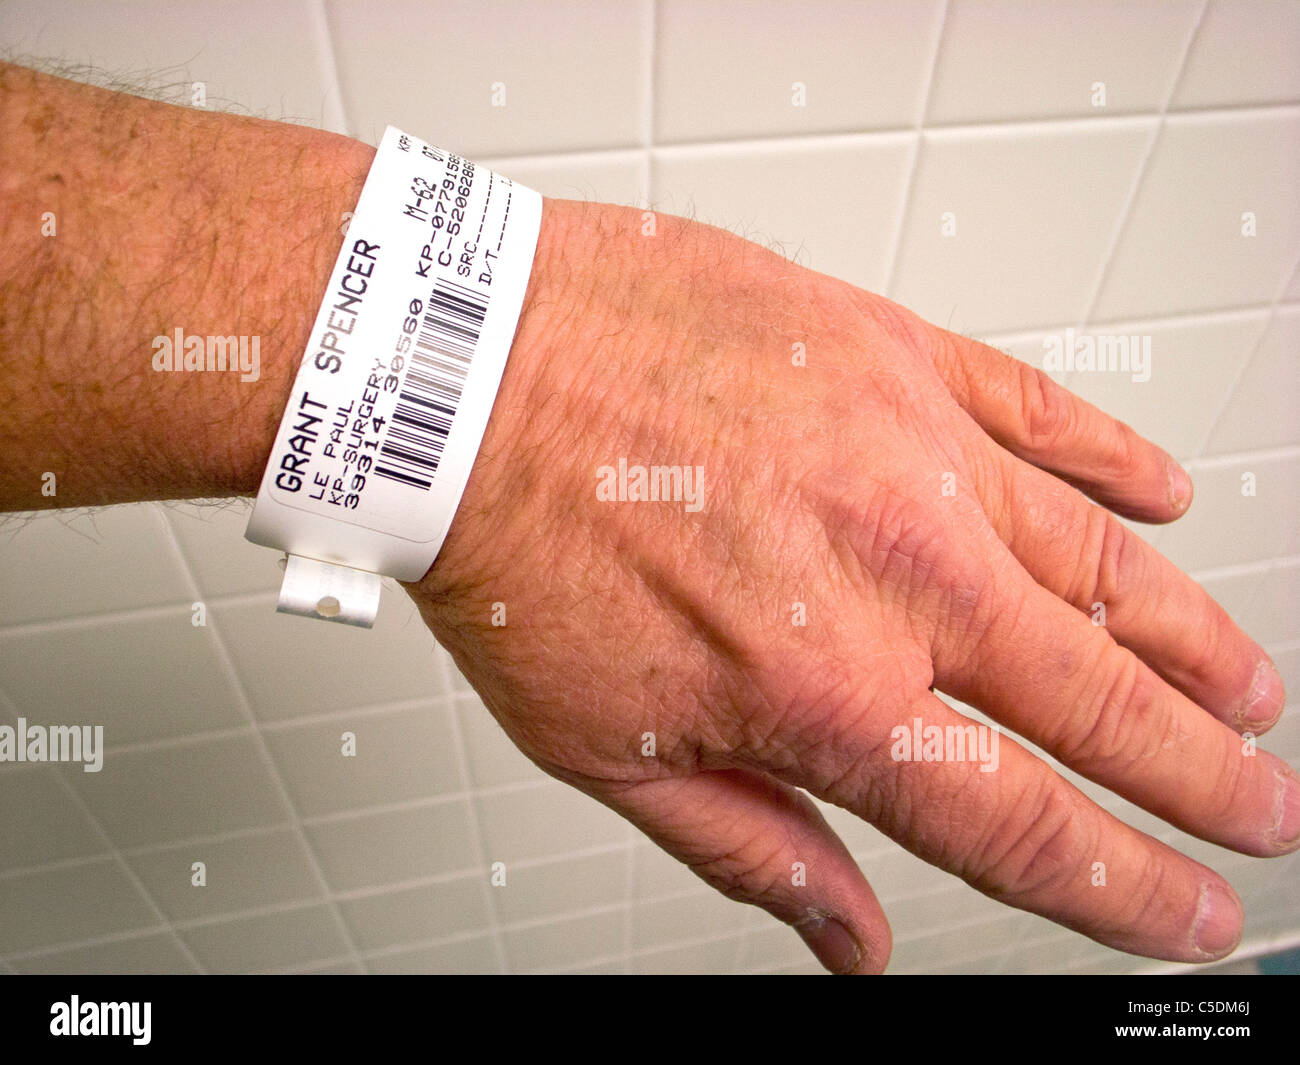 Un paciente del hospital lleva una pulsera de identificación con código de barras. Foto de stock